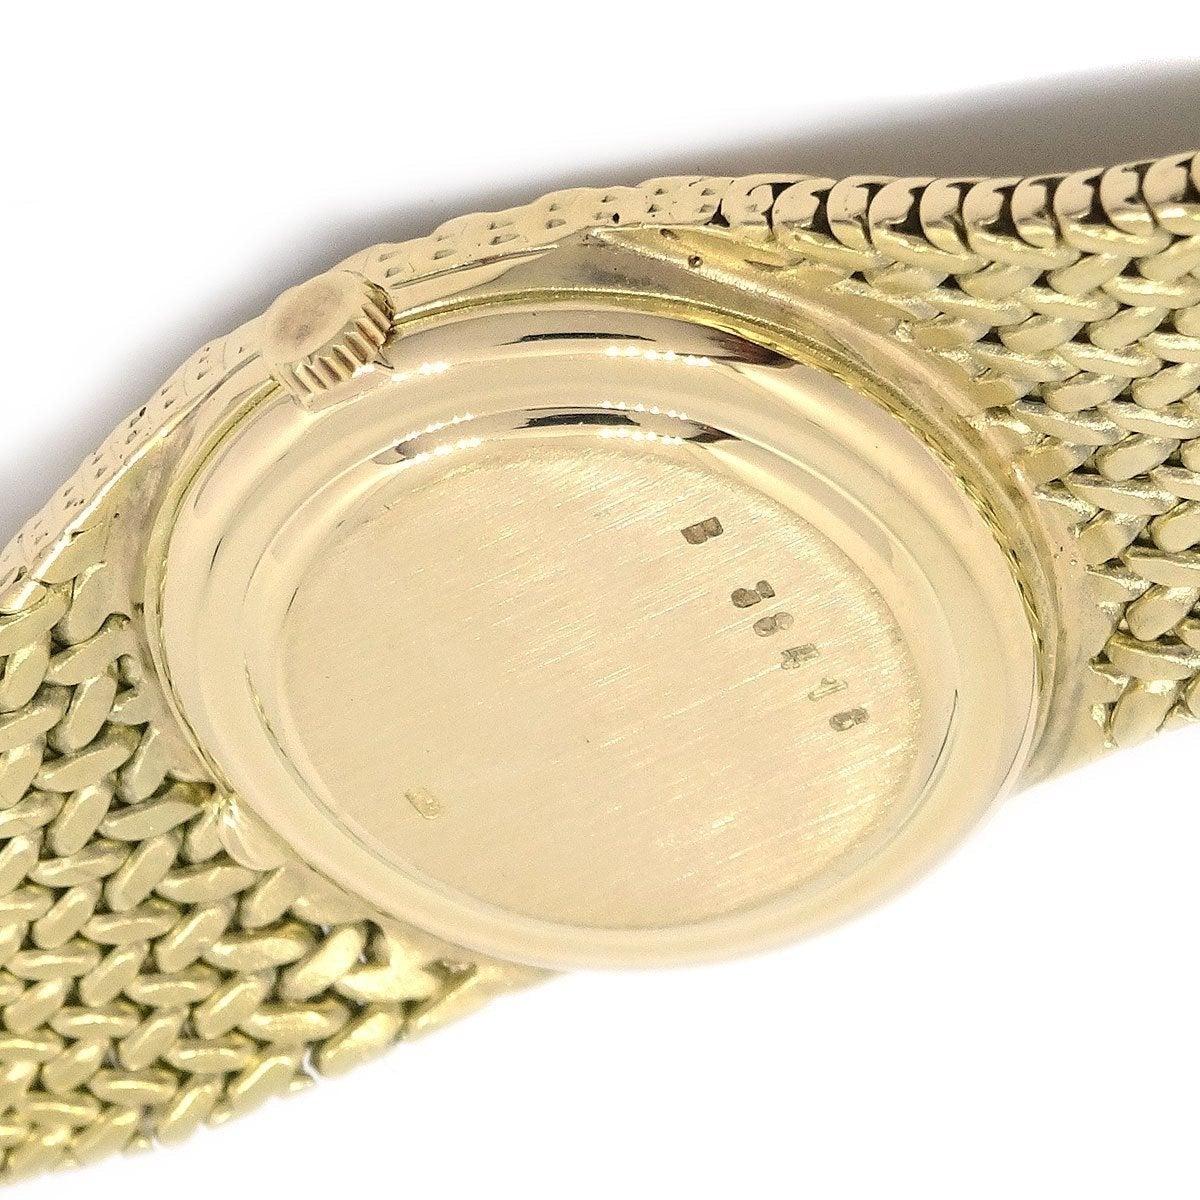 AUDEMARS PIGUET 18K Yellow Gold Self Winding Braided Evening Wrist Watch 1